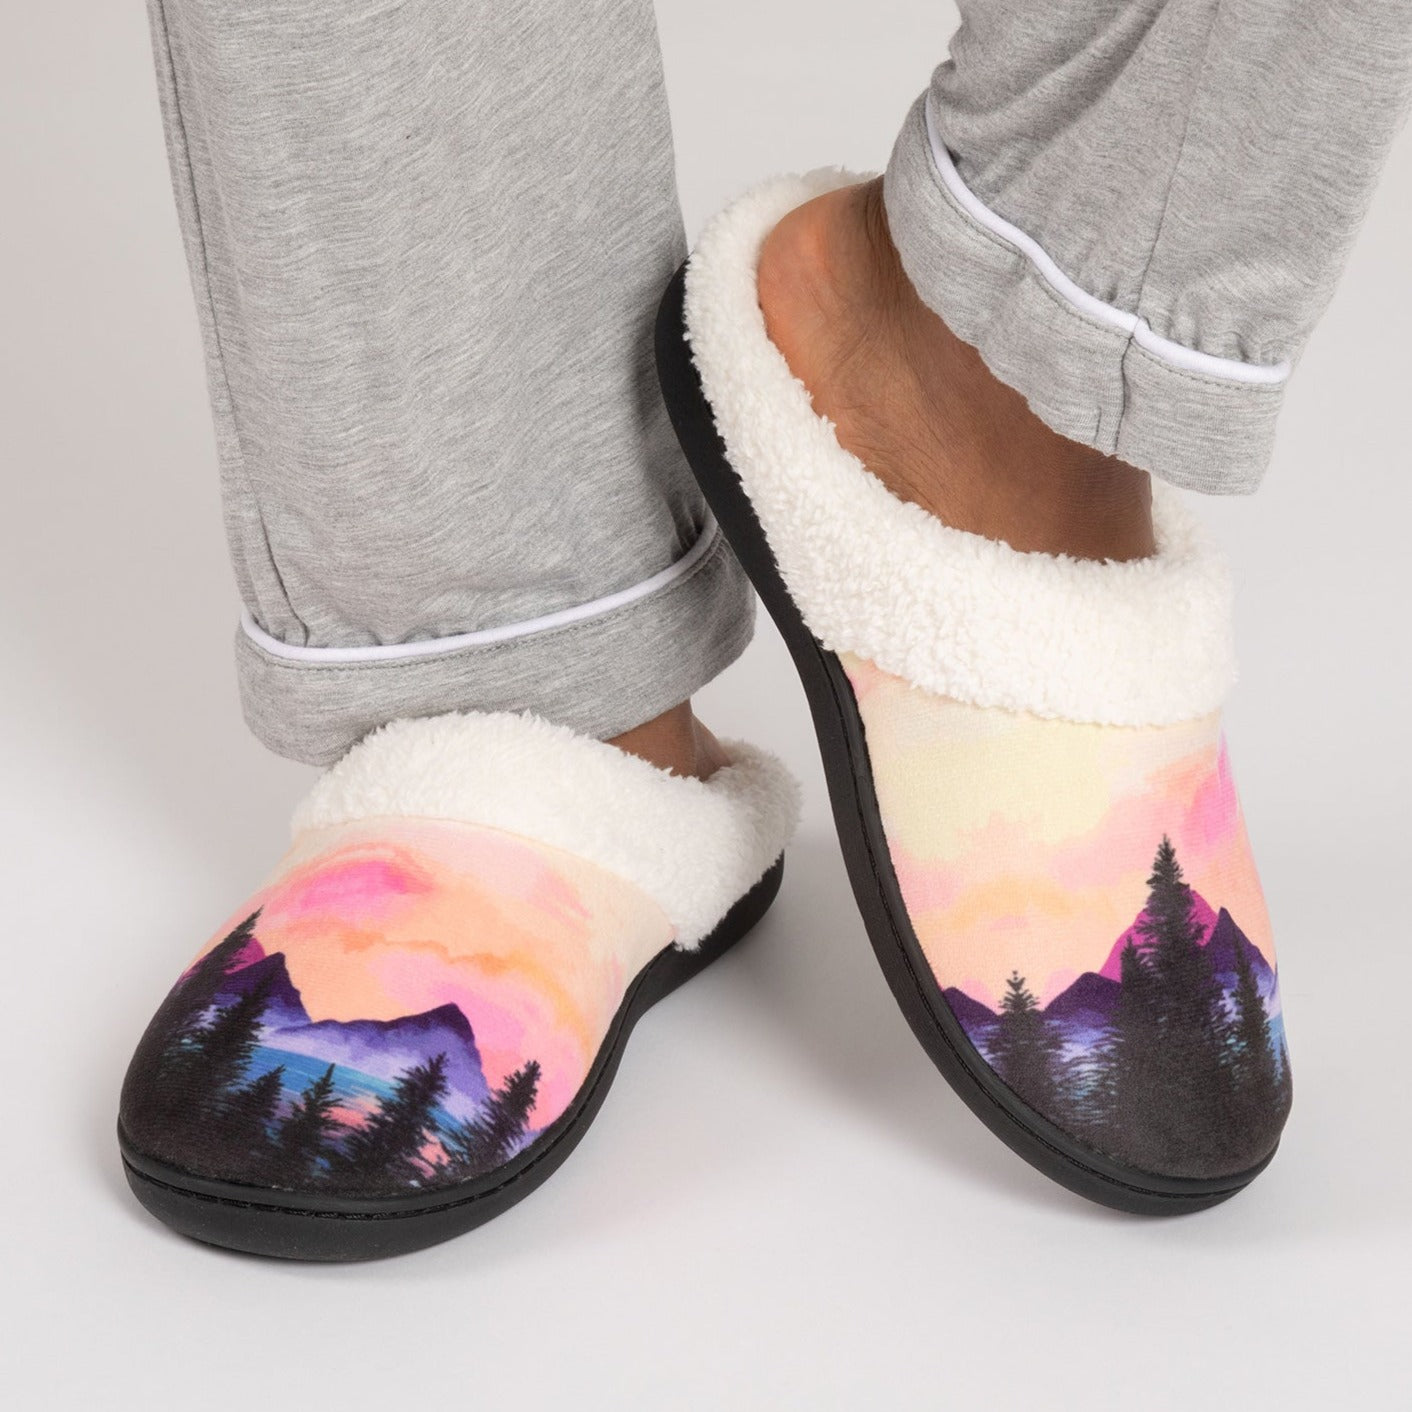 Dream Slide Slippers - Mountain - XL